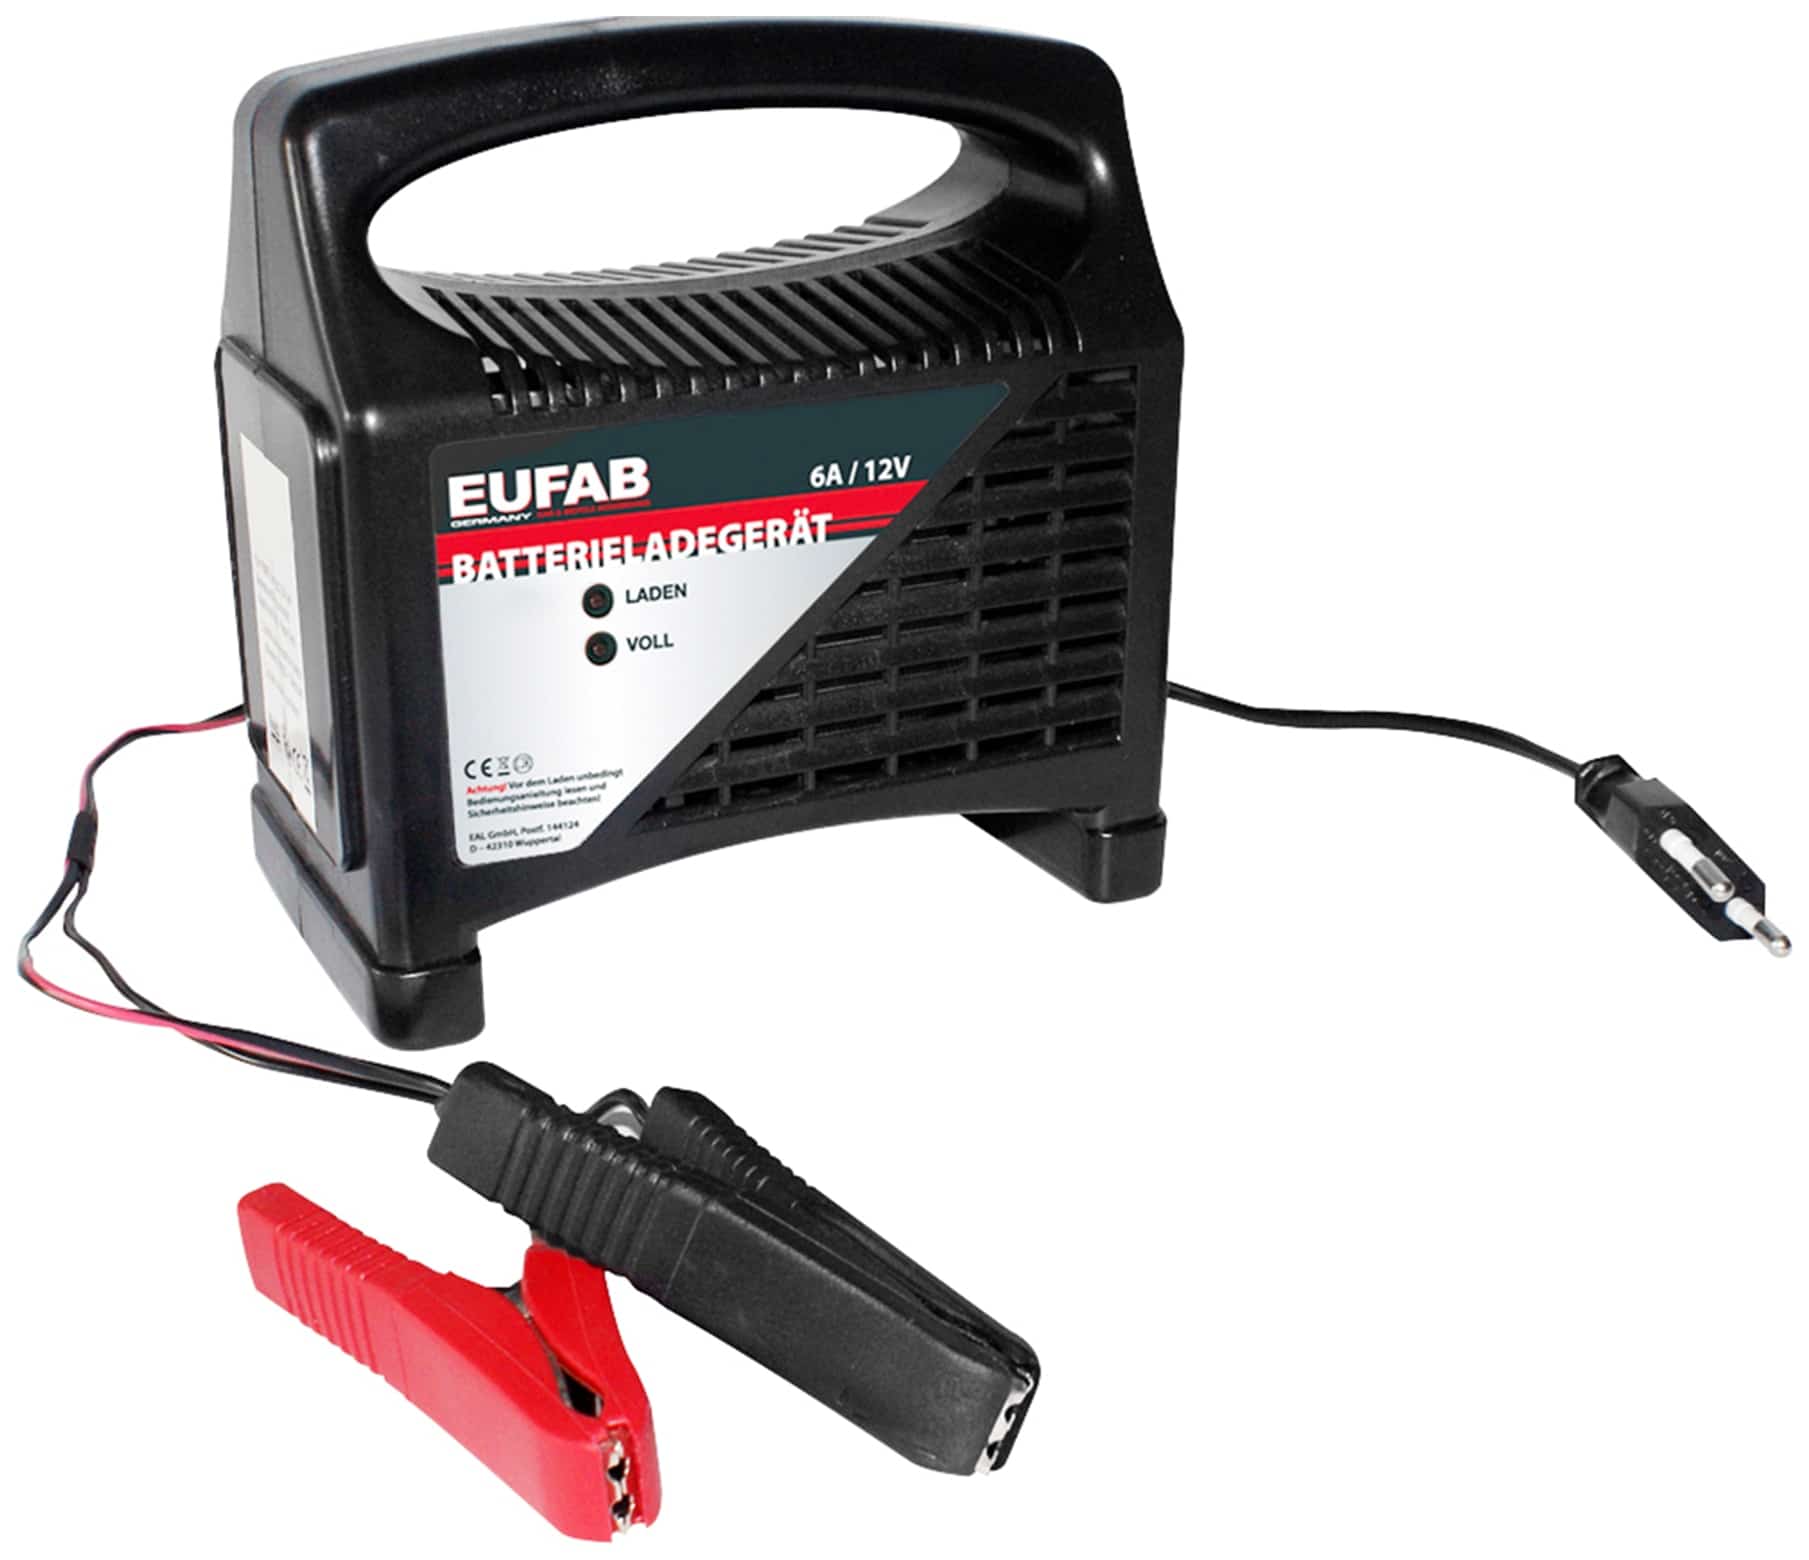 EUFAB Batterie-Ladegerät 16542, 12 V, 6 A